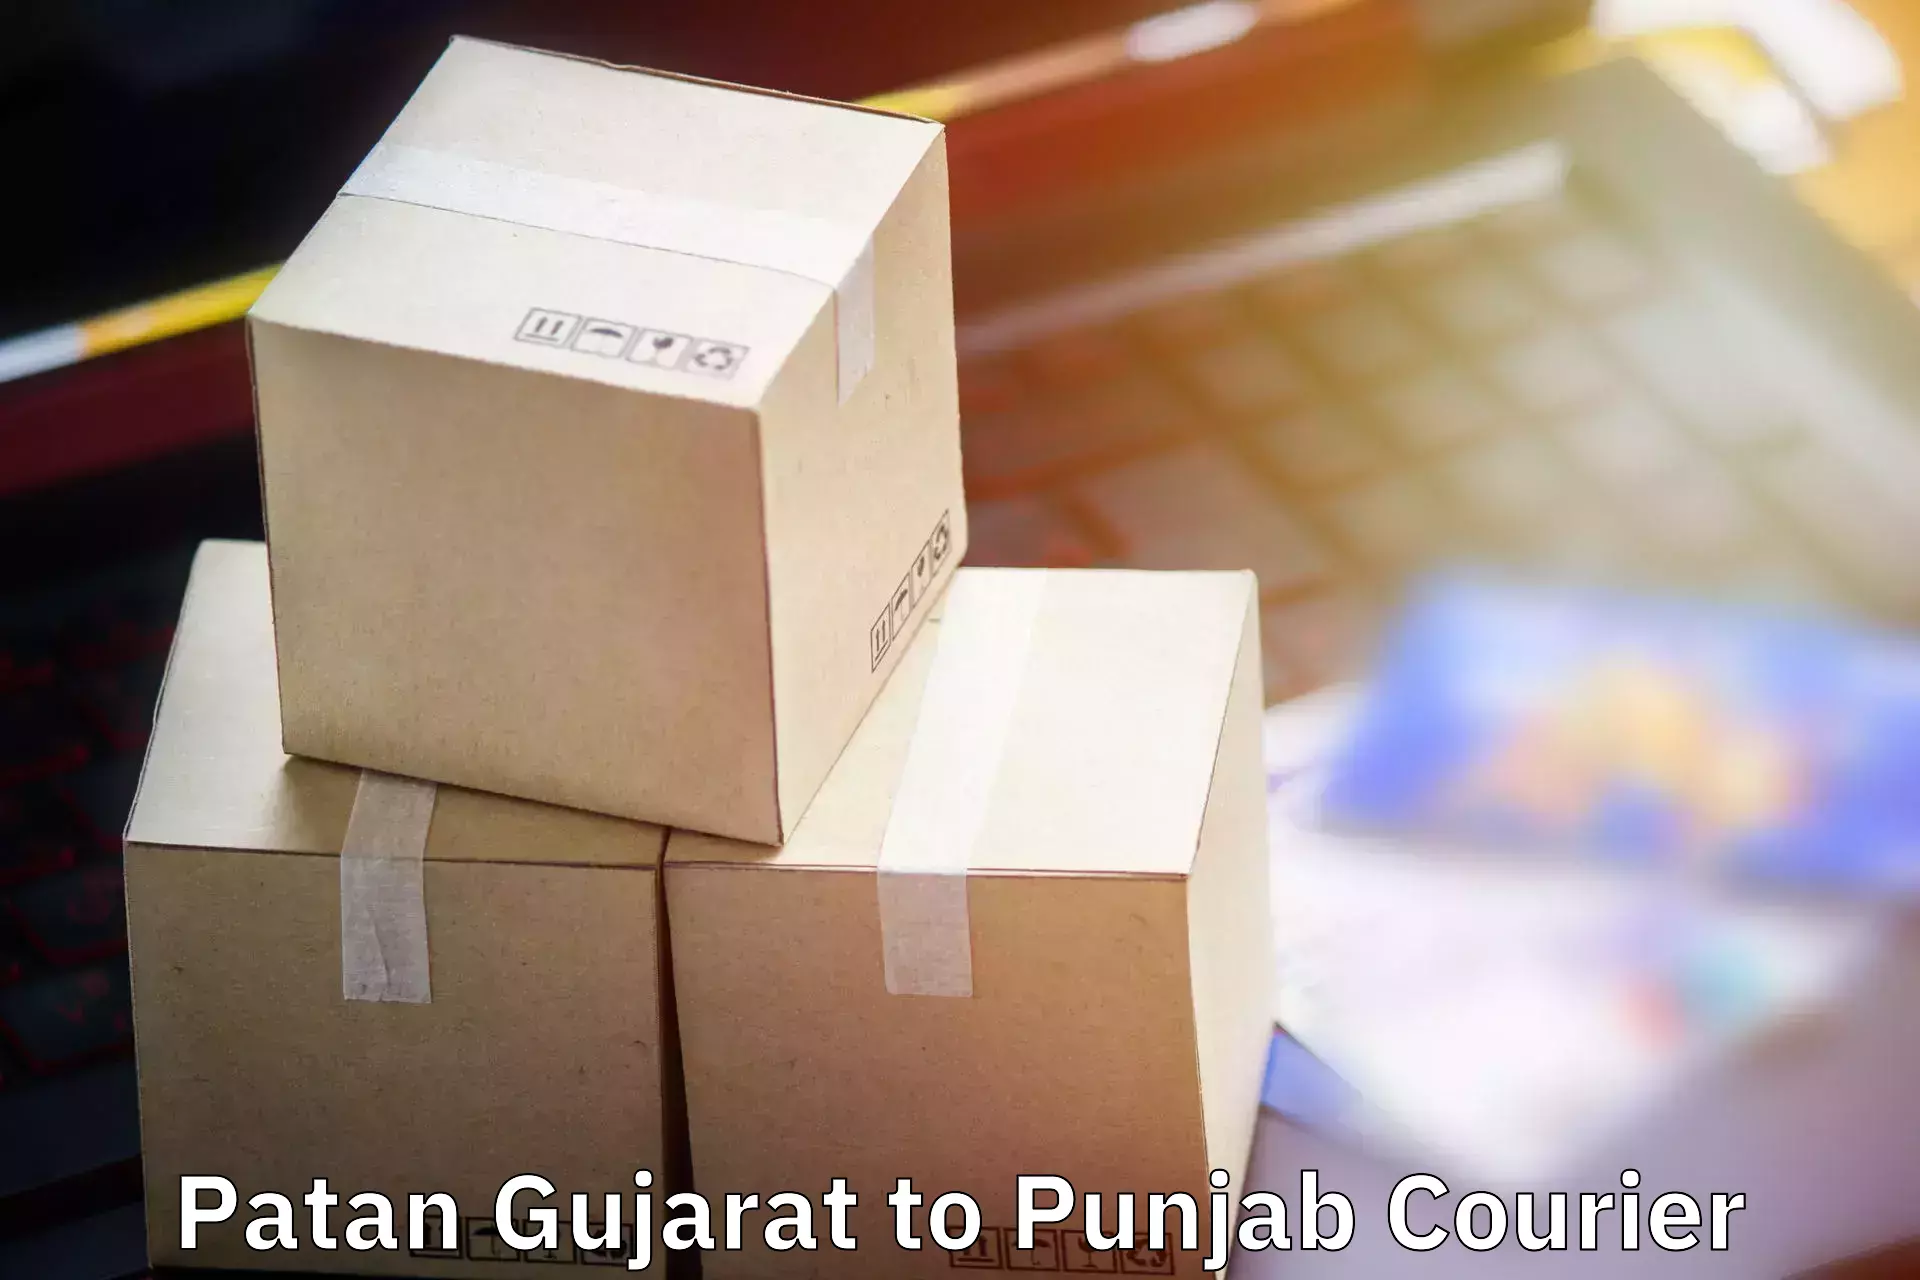 Luggage shipping planner Patan Gujarat to Central University of Punjab Bathinda